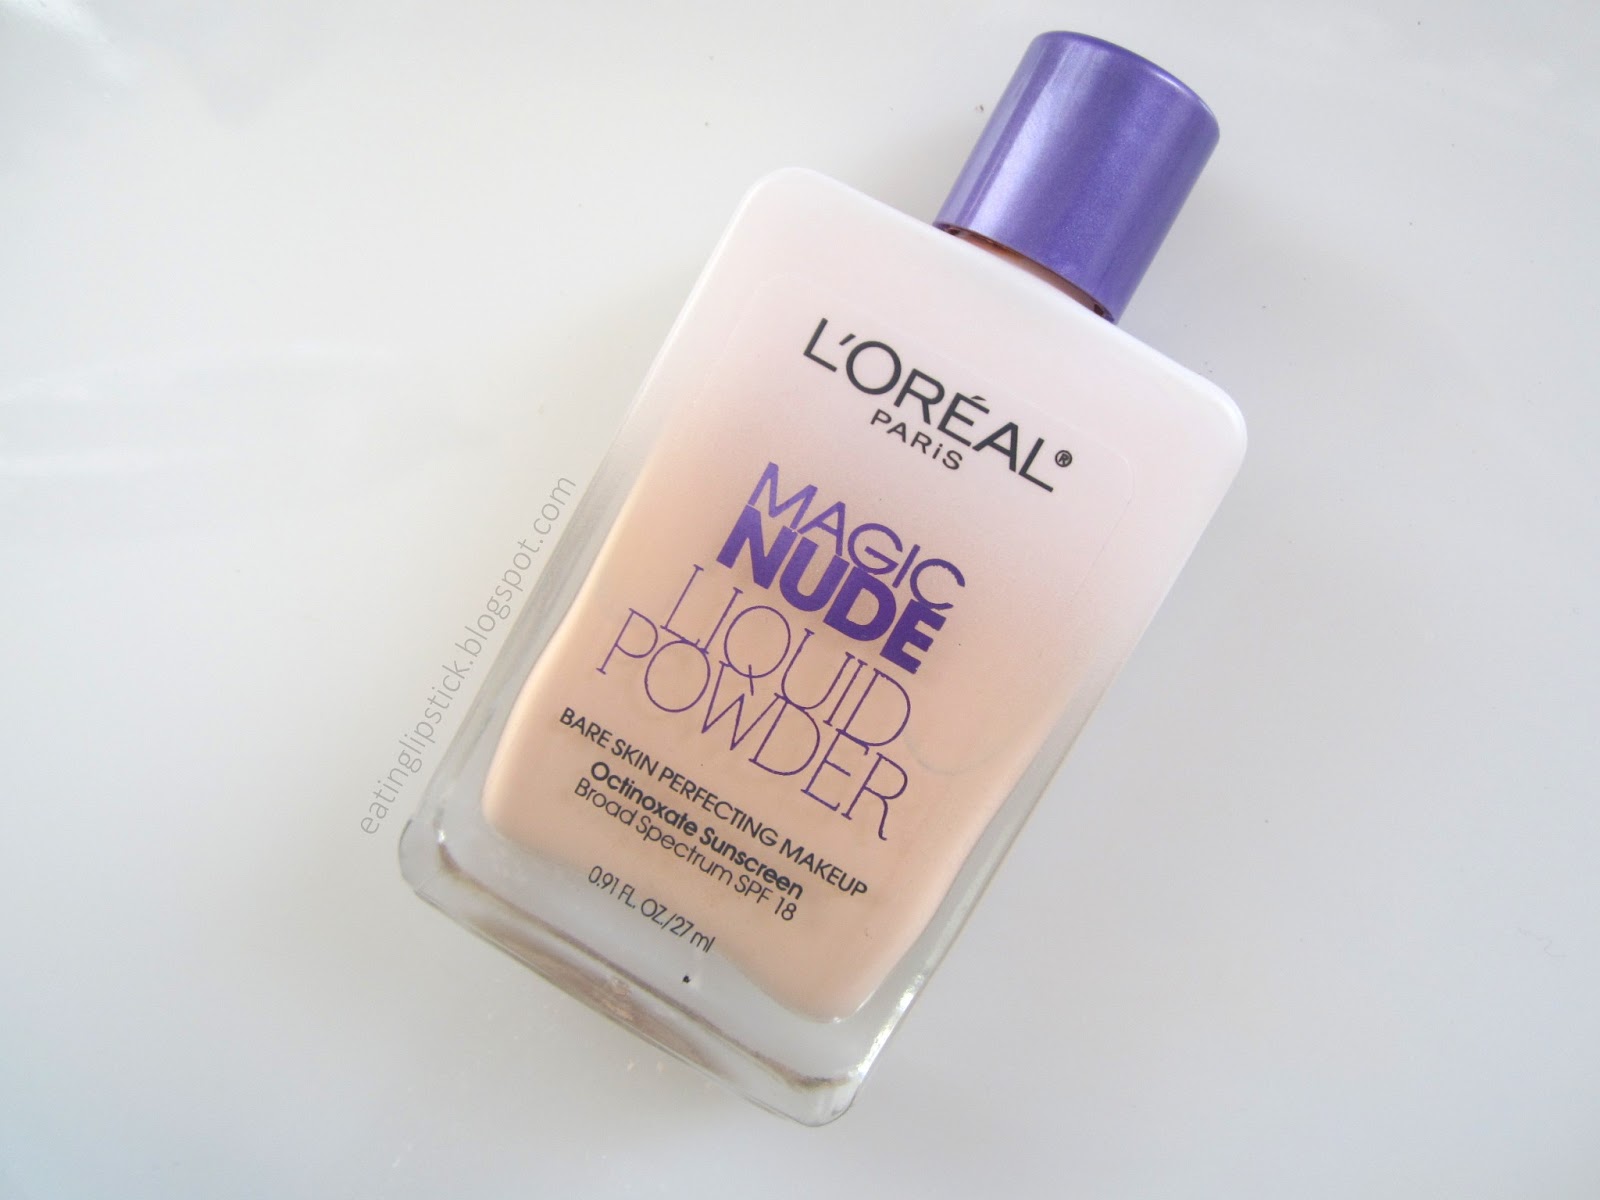 LOreal Paris Magic Nude Liquid Powder Bare Skin 